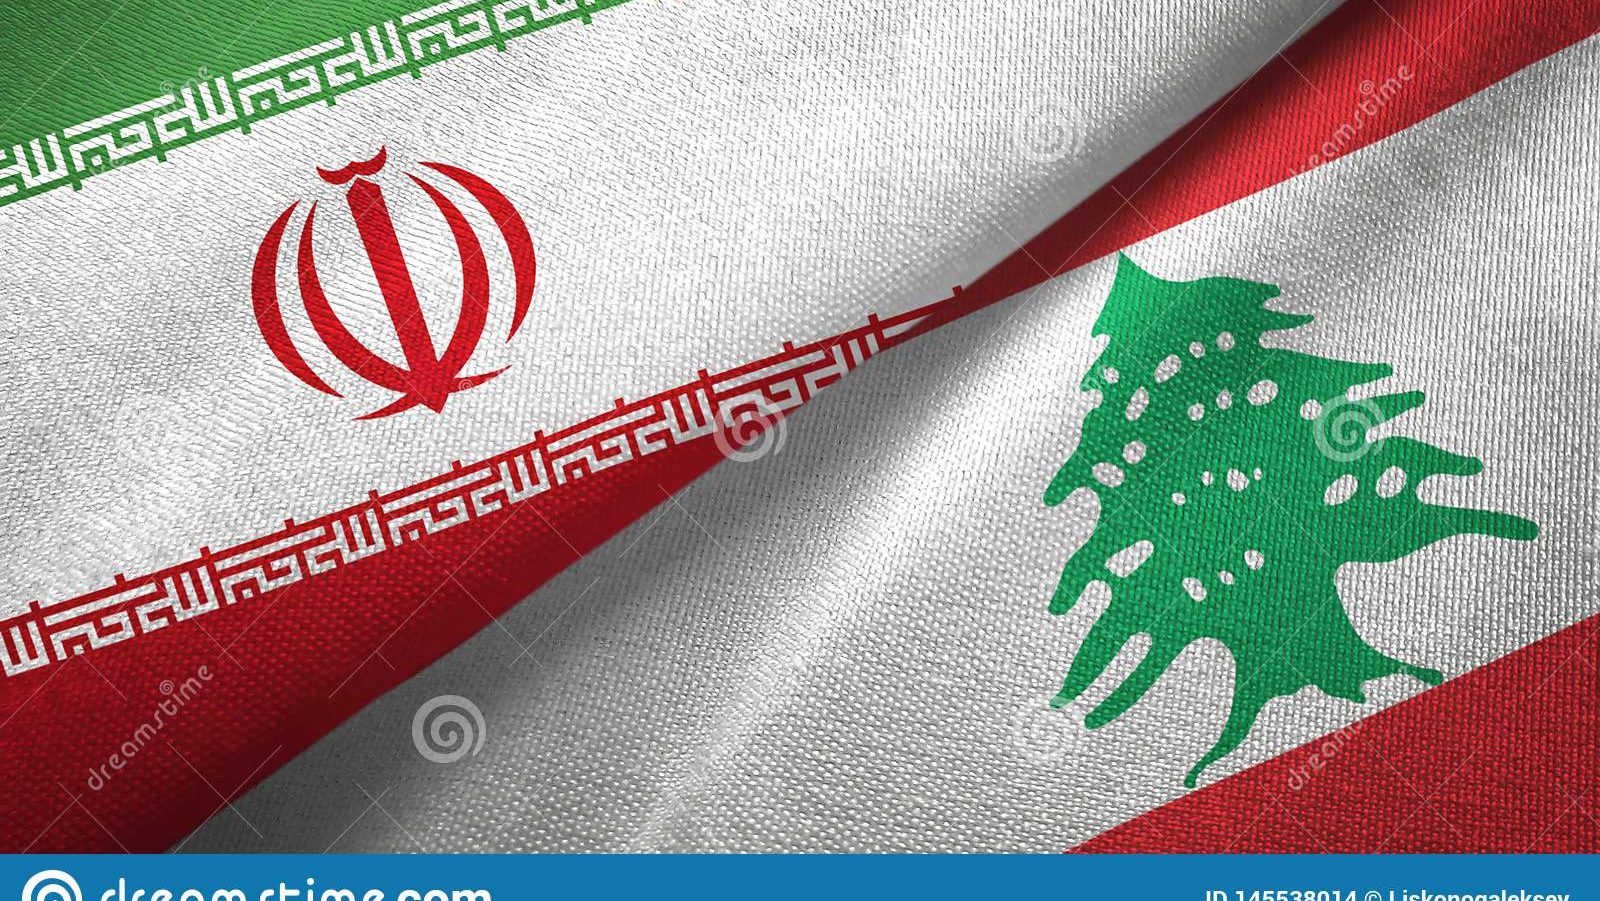 همکاری های بسیار خوبی بین ایران و لبنان وجود دارد که می توان در صادرات به لبنان از این مزیت ها استفاده کرد